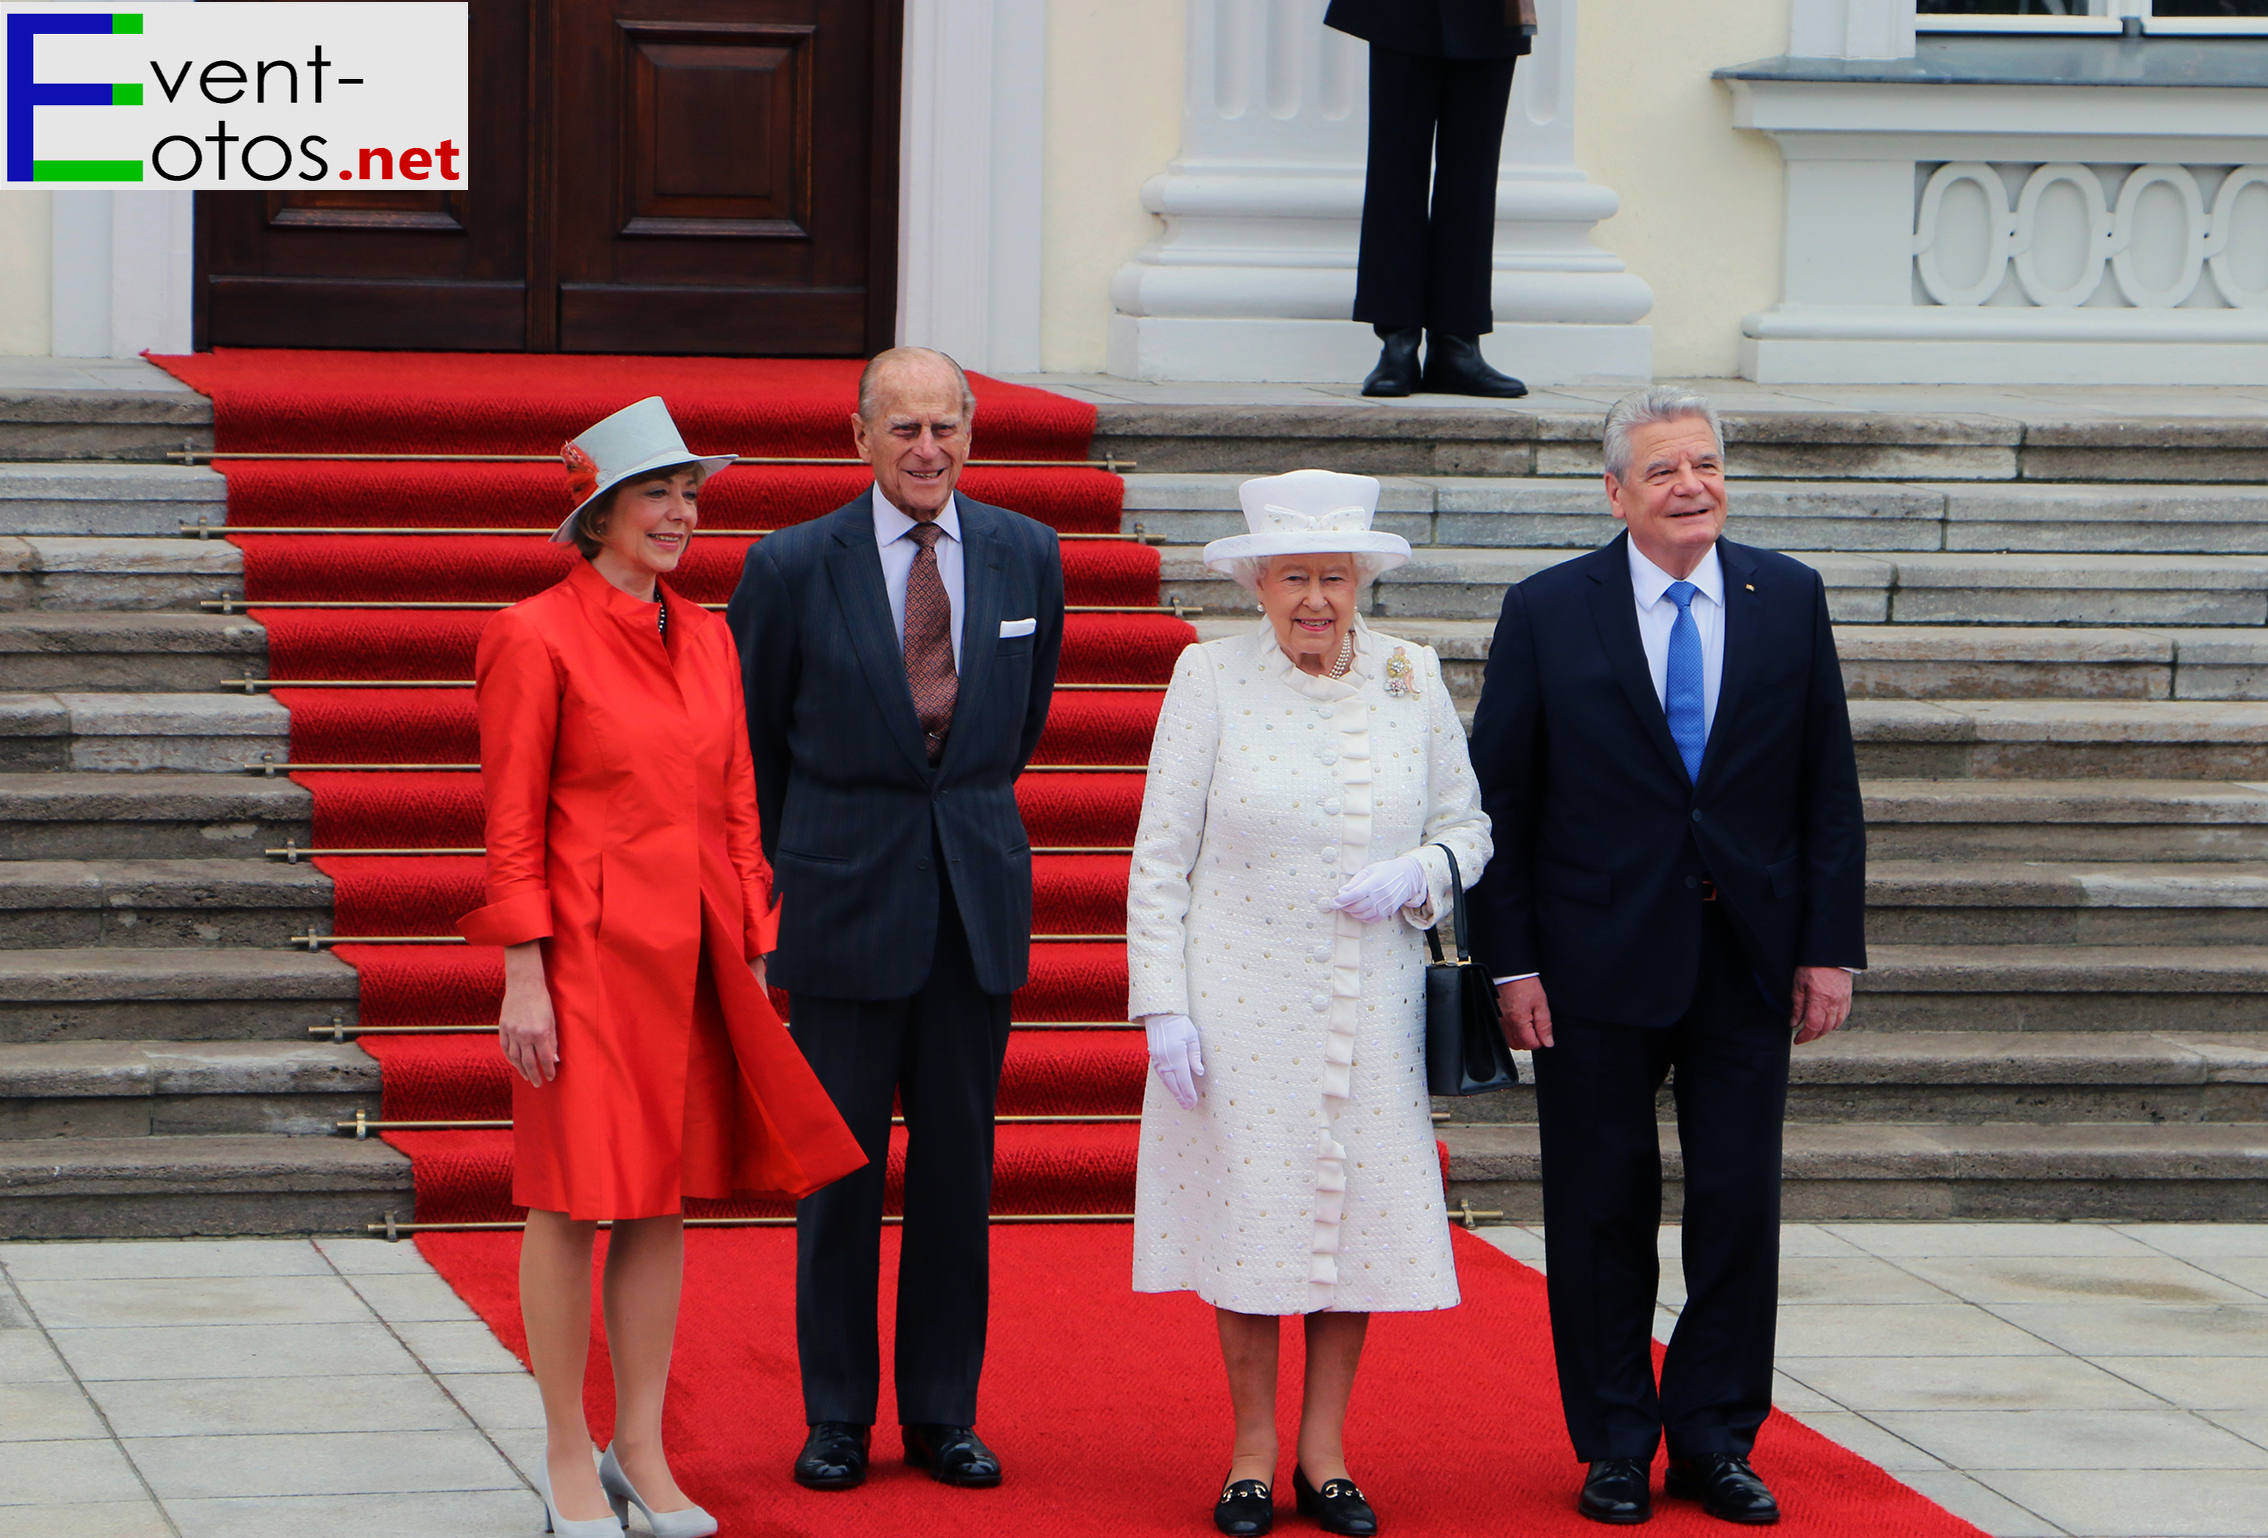 D.Schadt, Prinz Philip, die Queen und J.Gauck
